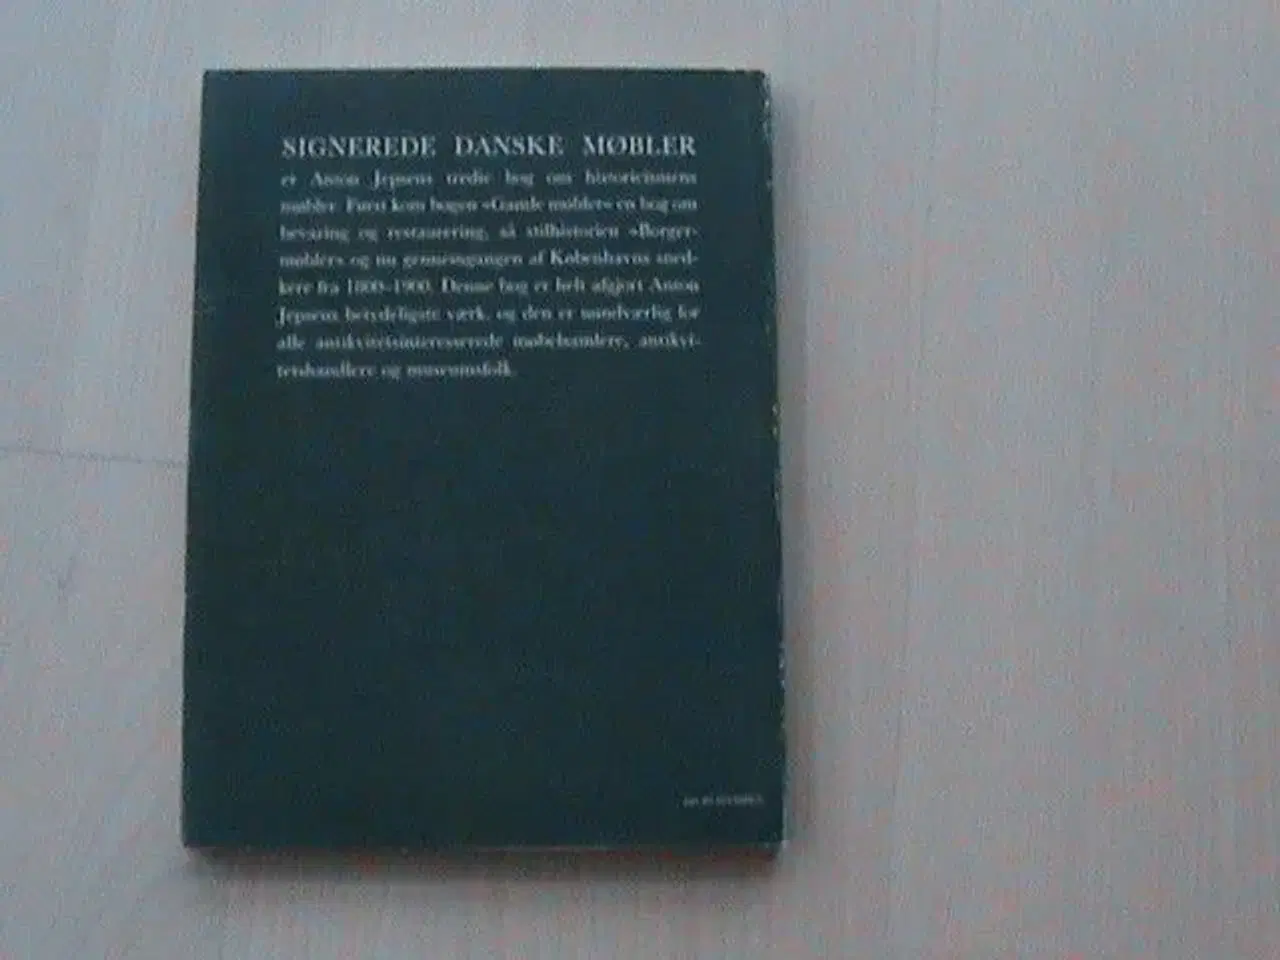 Billede 2 - Bog: "Signerede danske møbler", Anton Jepsen